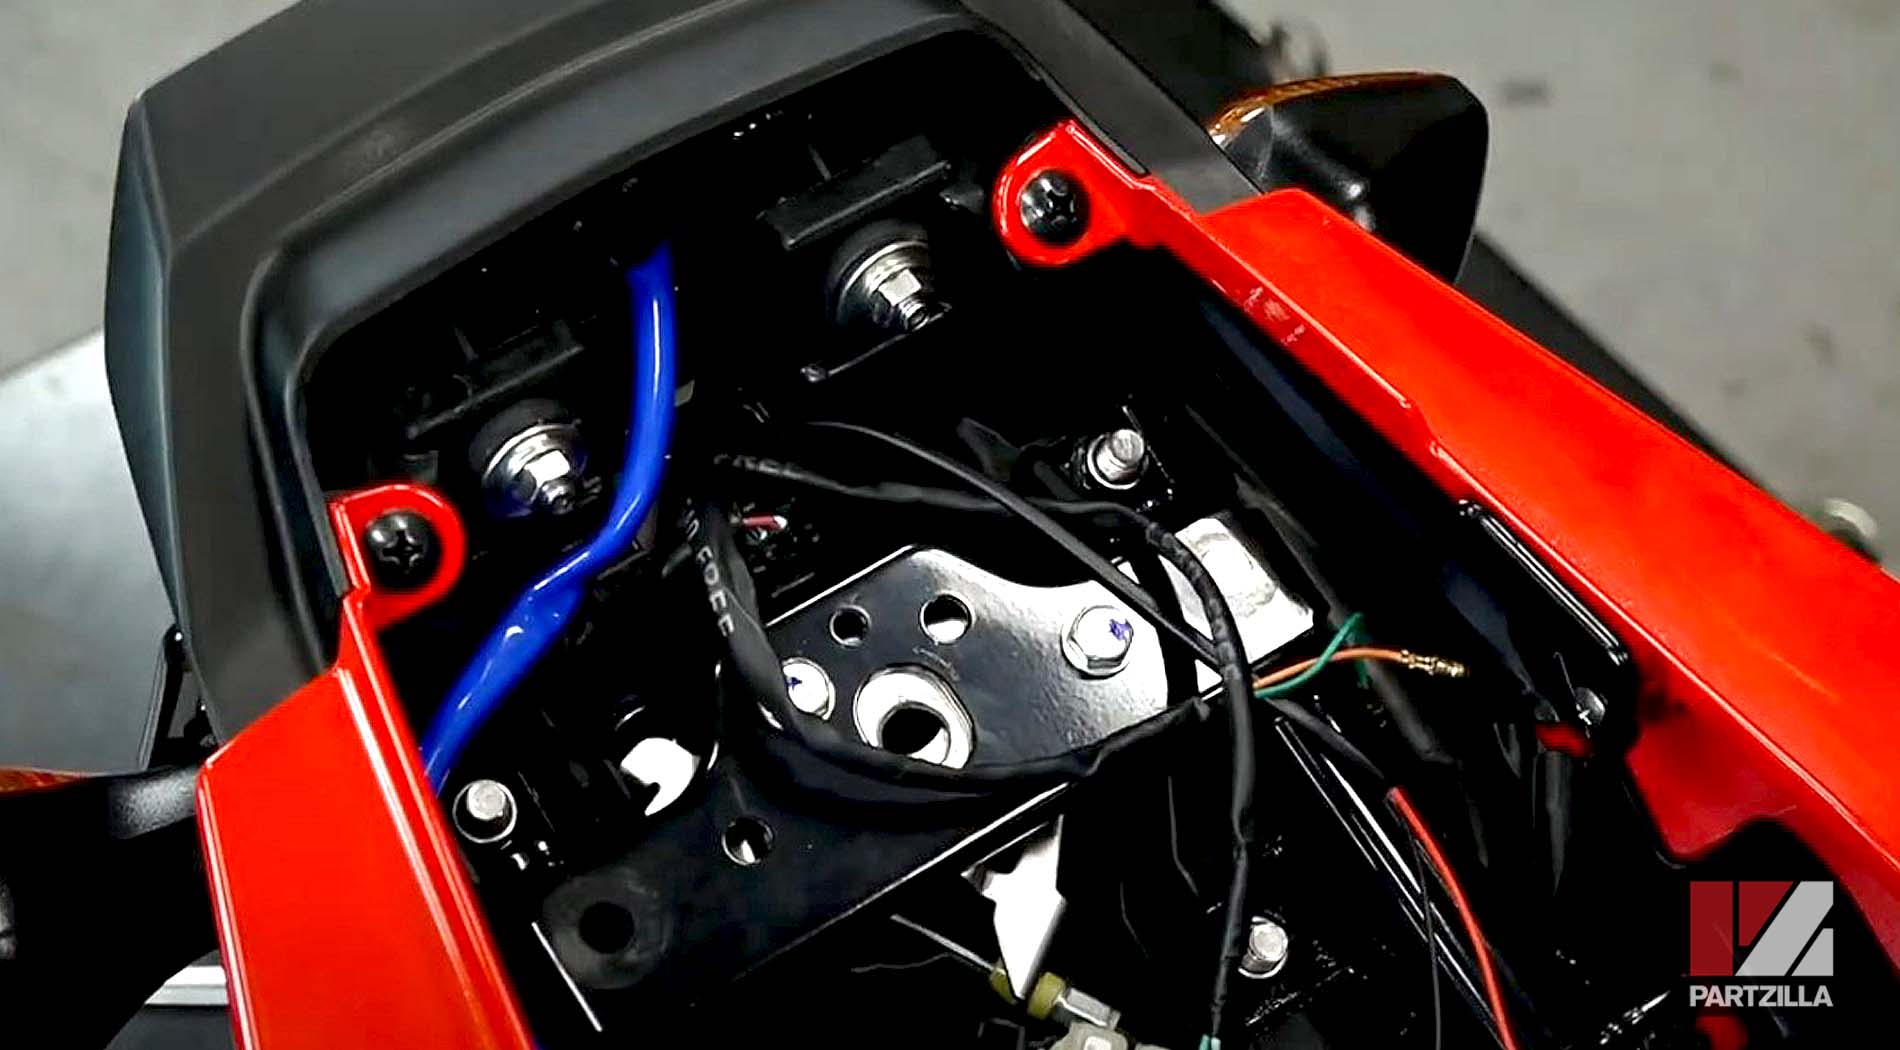 2018 Honda Grom ABS aftermarket rear fender eliminator kit installation